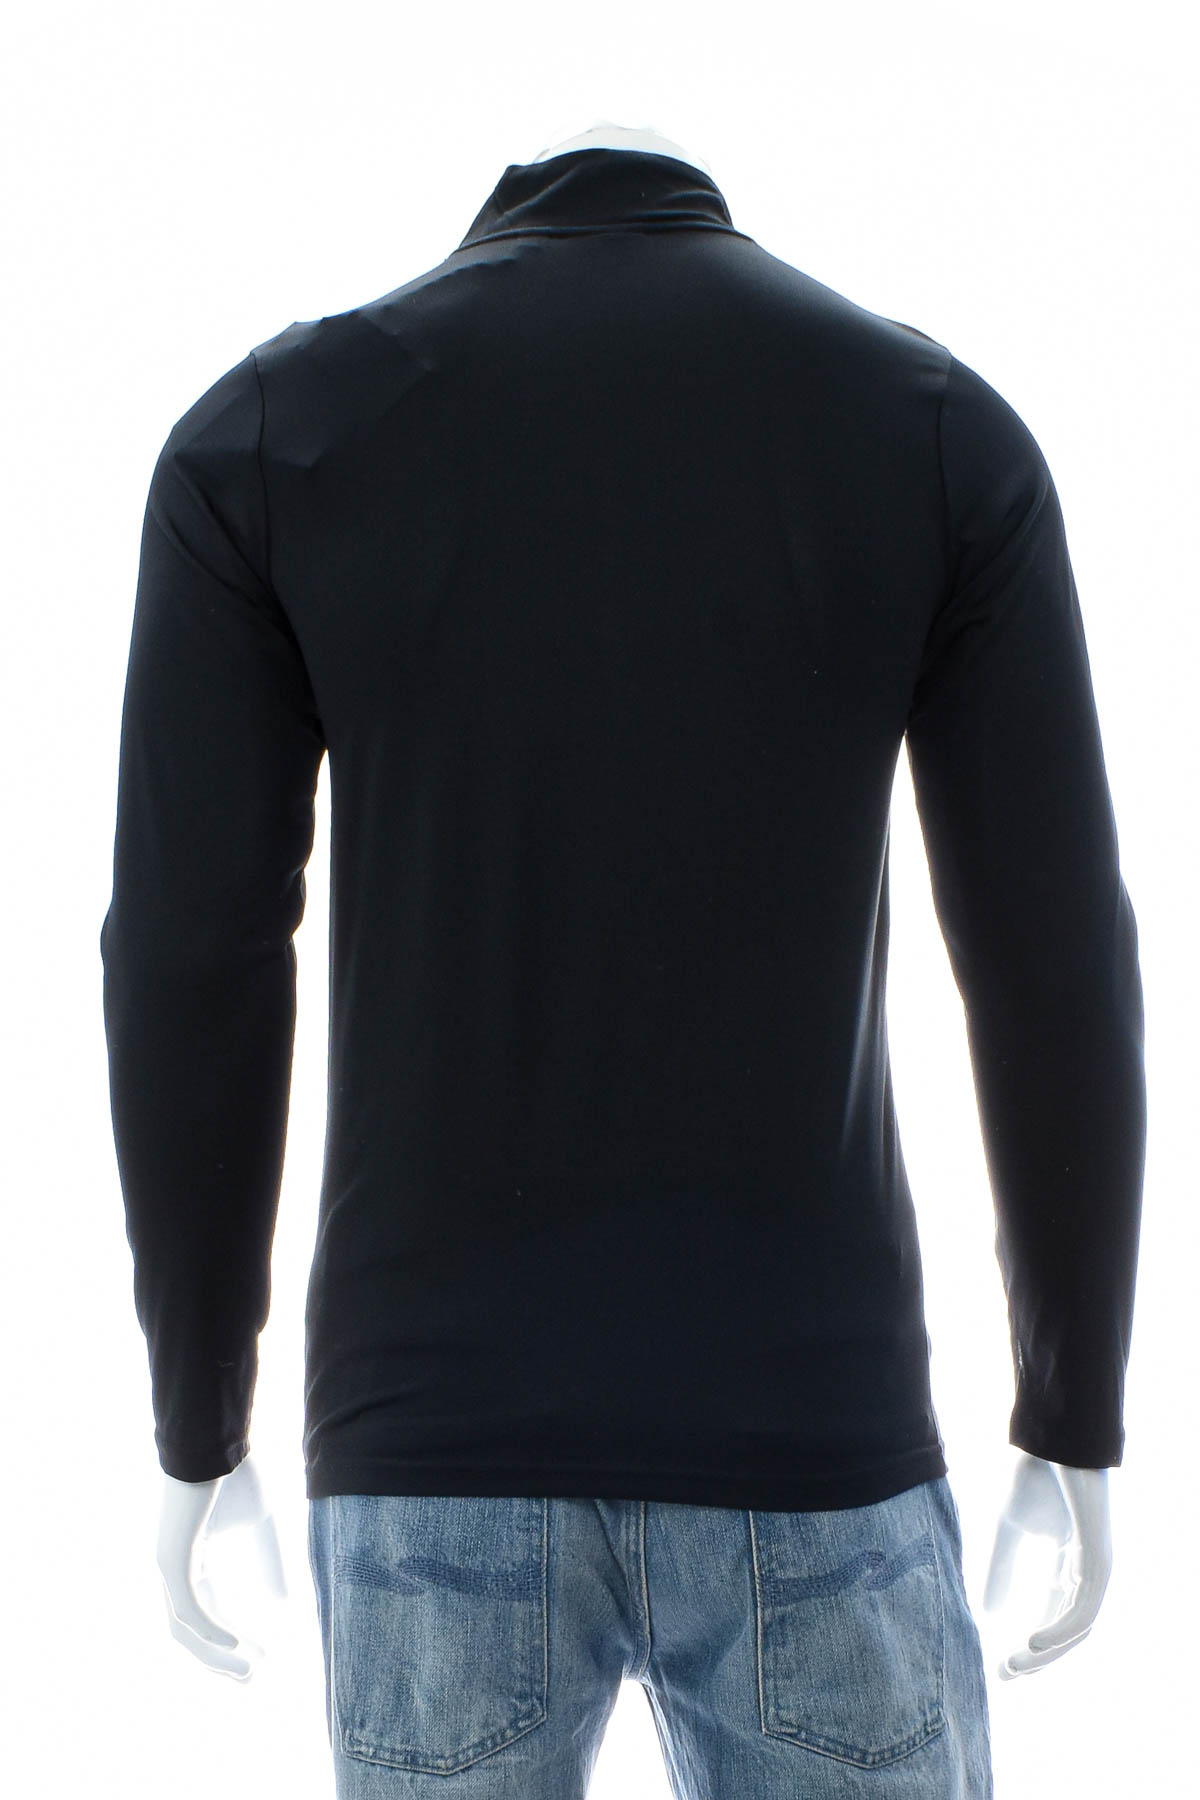 Αθλητική μπλούζα ανδρών - Fila - 1